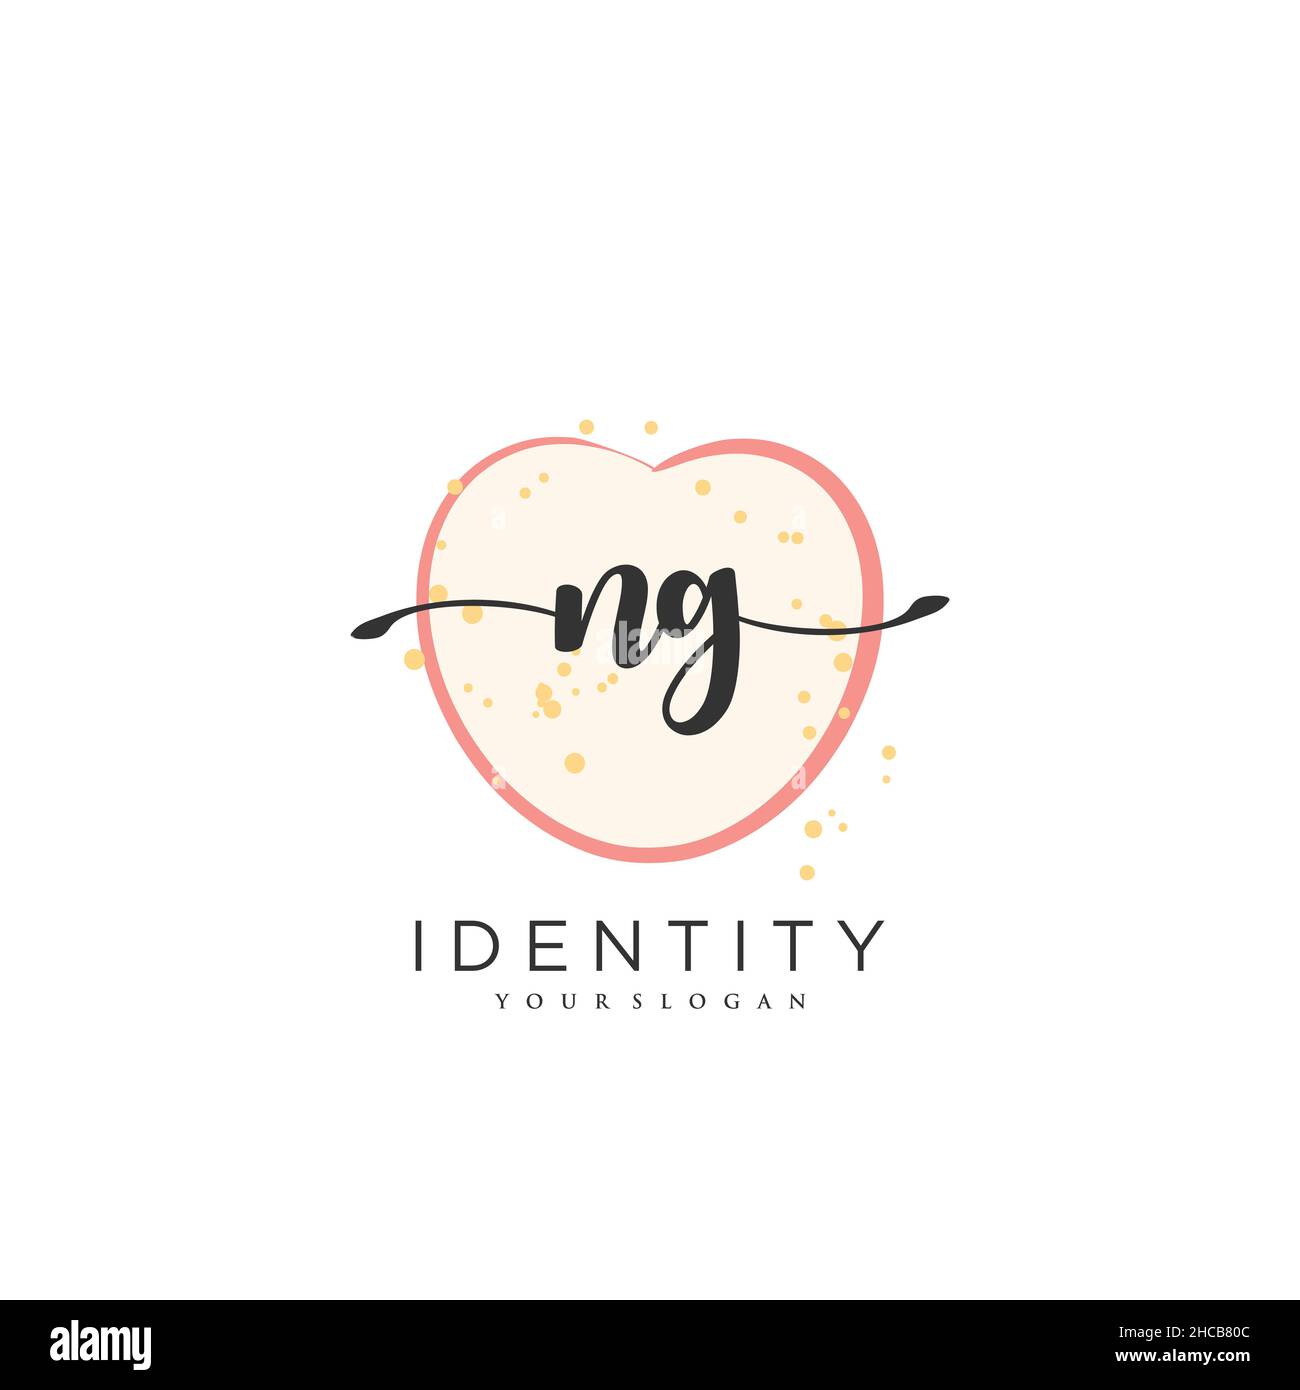 NG Handwriting logo arte vectorial de la firma inicial, boda, moda, joyería, boutique, floral y botánico con plantilla creativa para cualquier empresa Ilustración del Vector